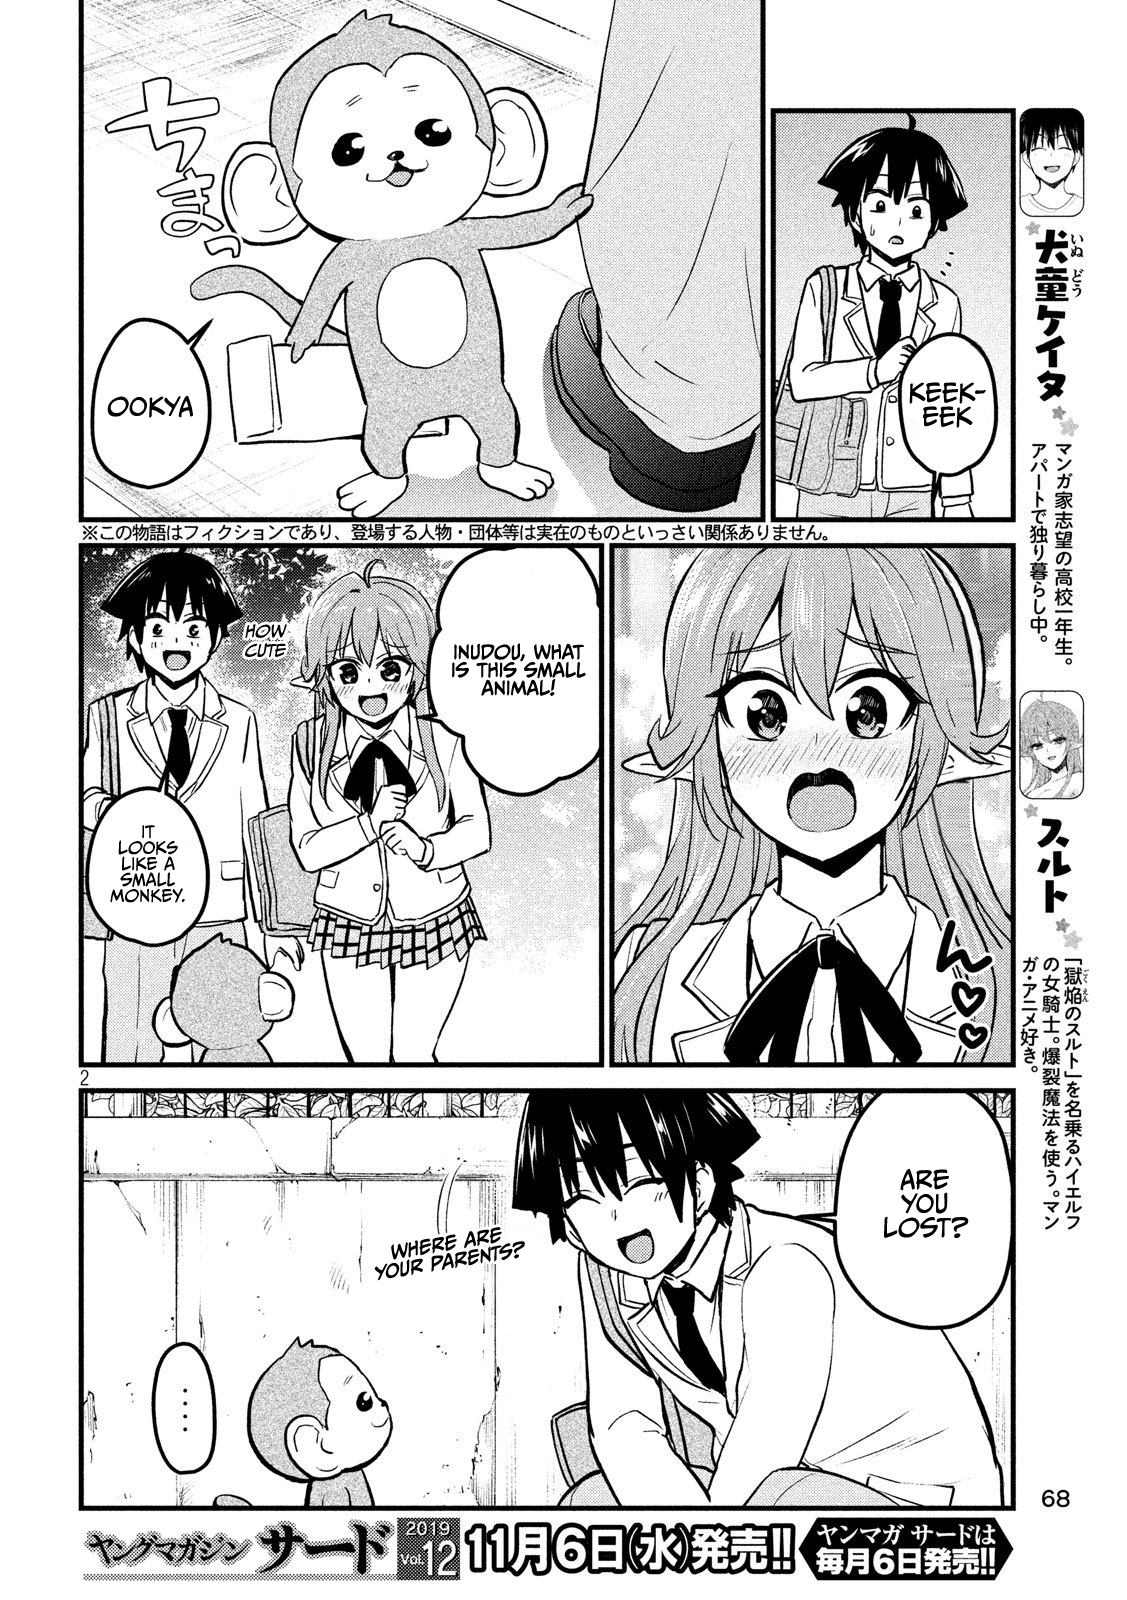 Otaku No Tonari Wa Erufu Desuka? - 9 page 2